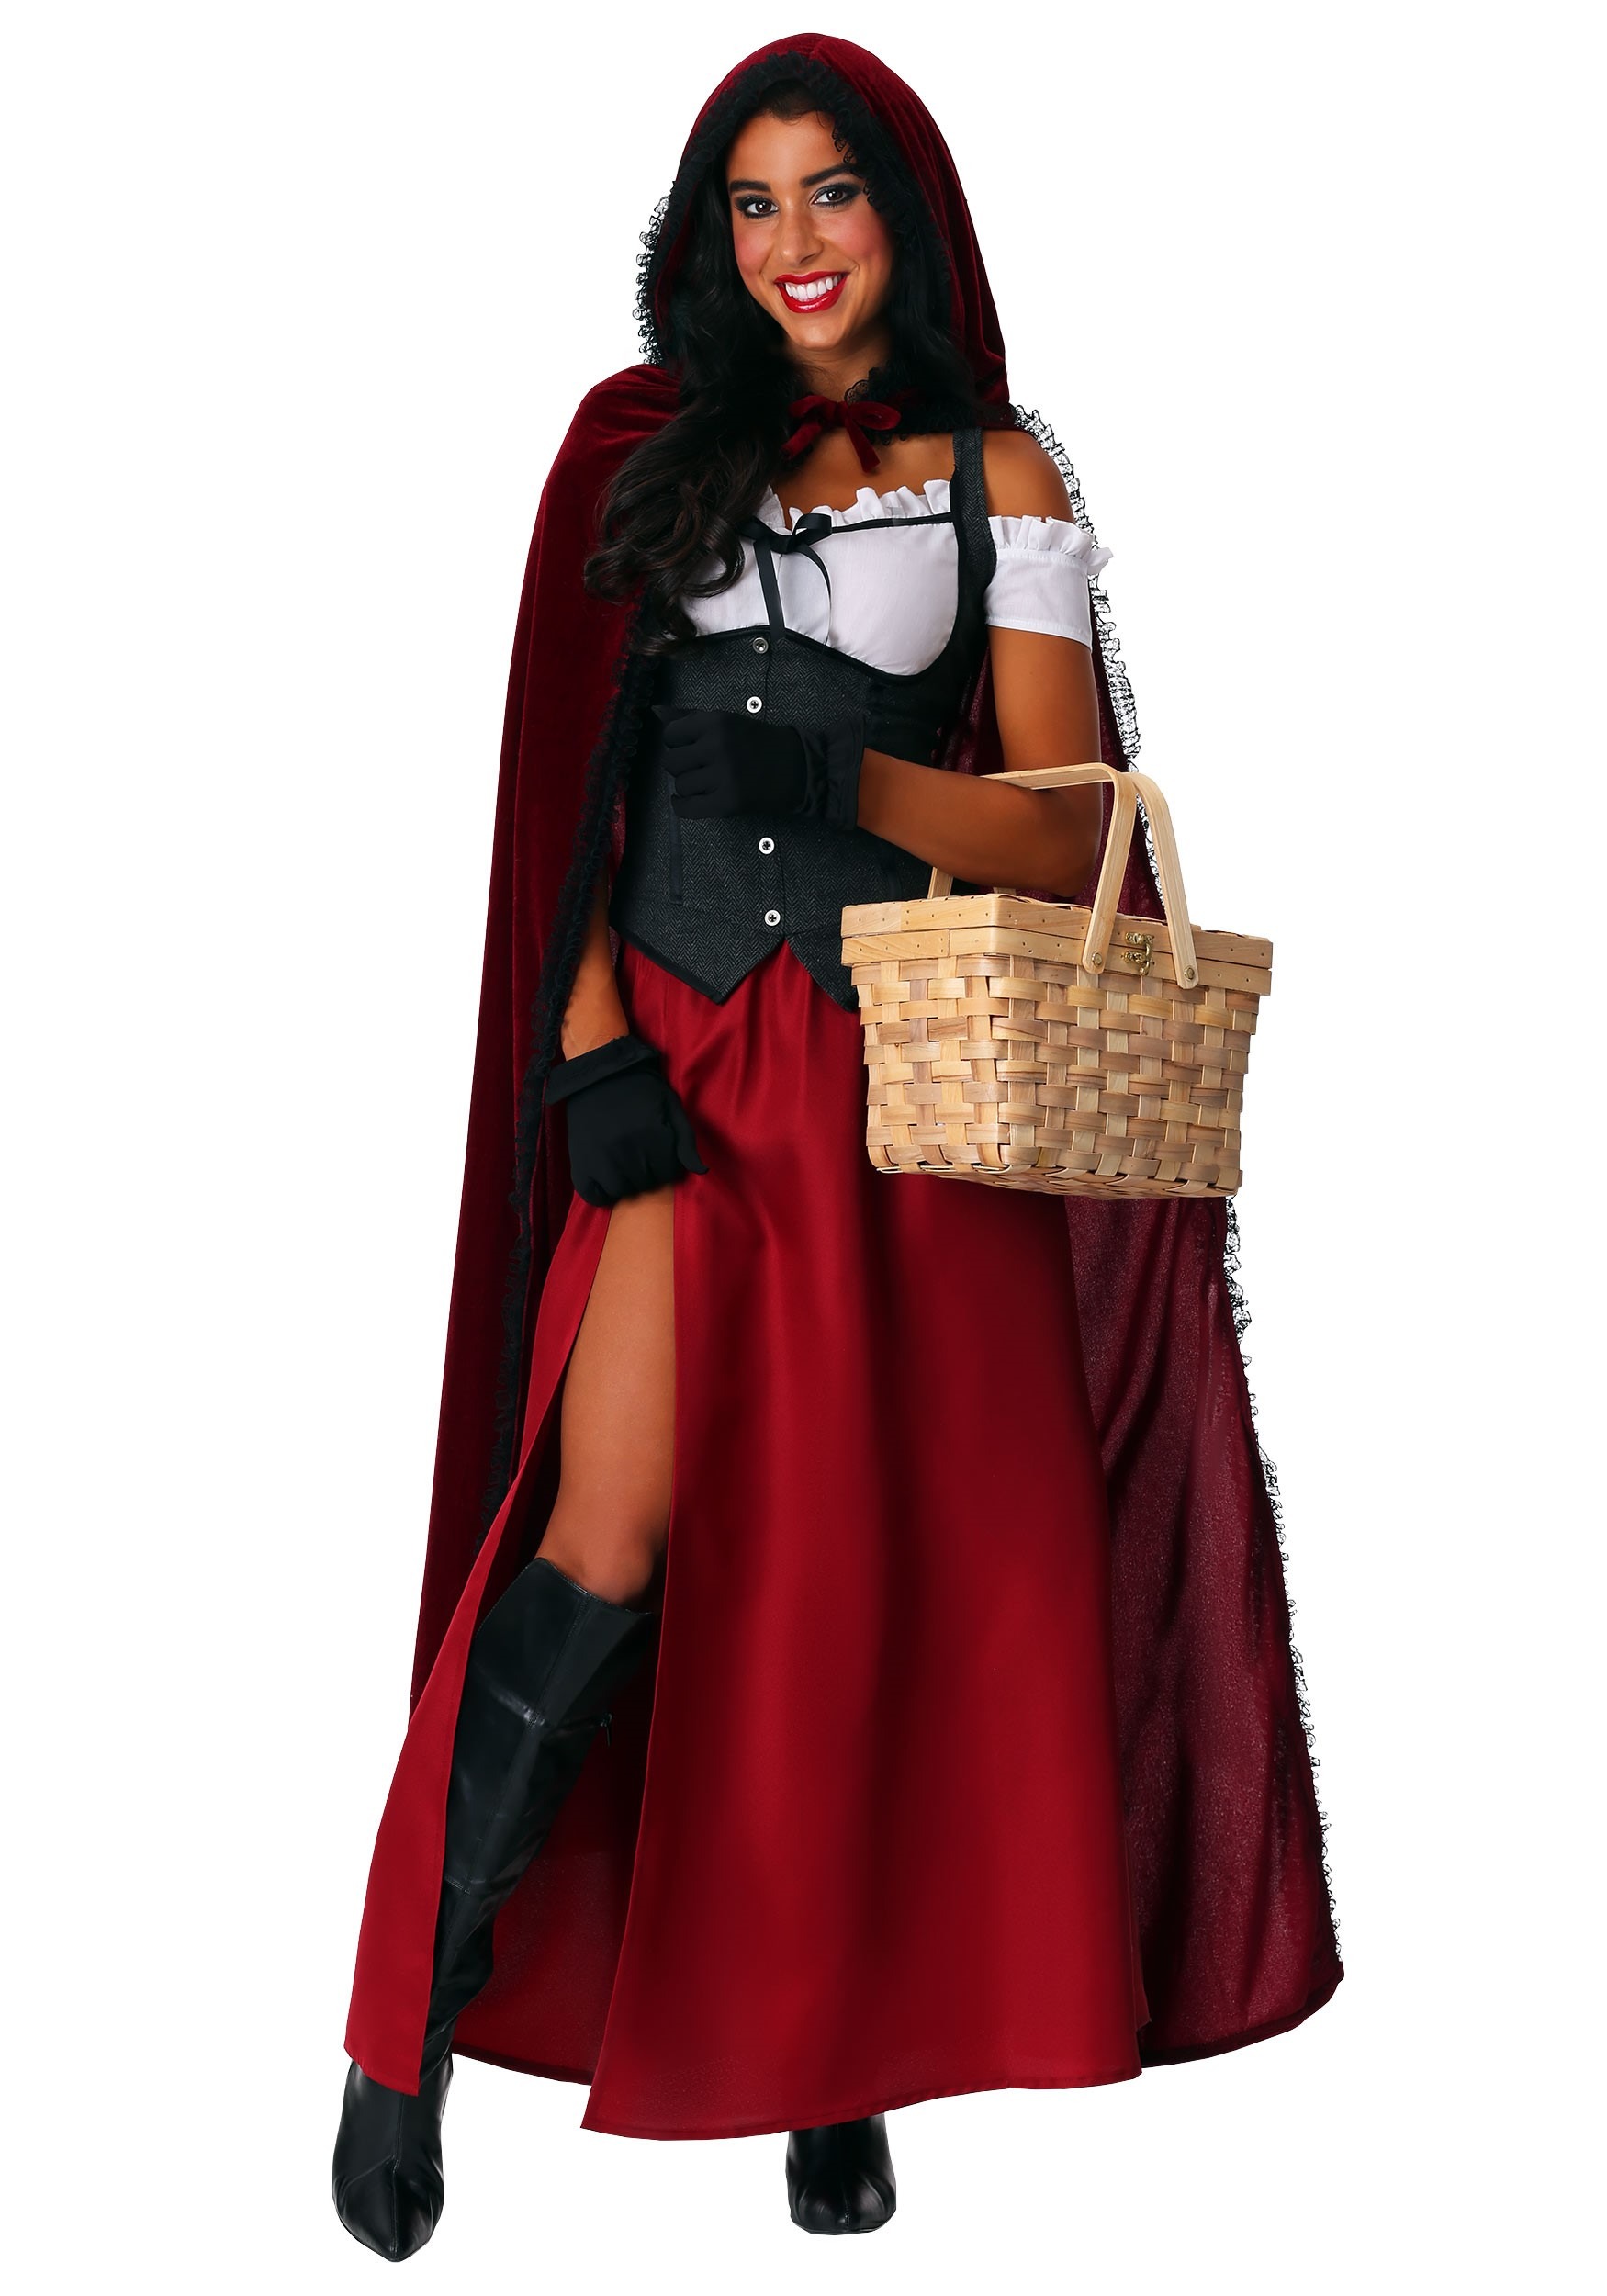 Ravishing Red Riding Hood Women’s Plus Size Costume